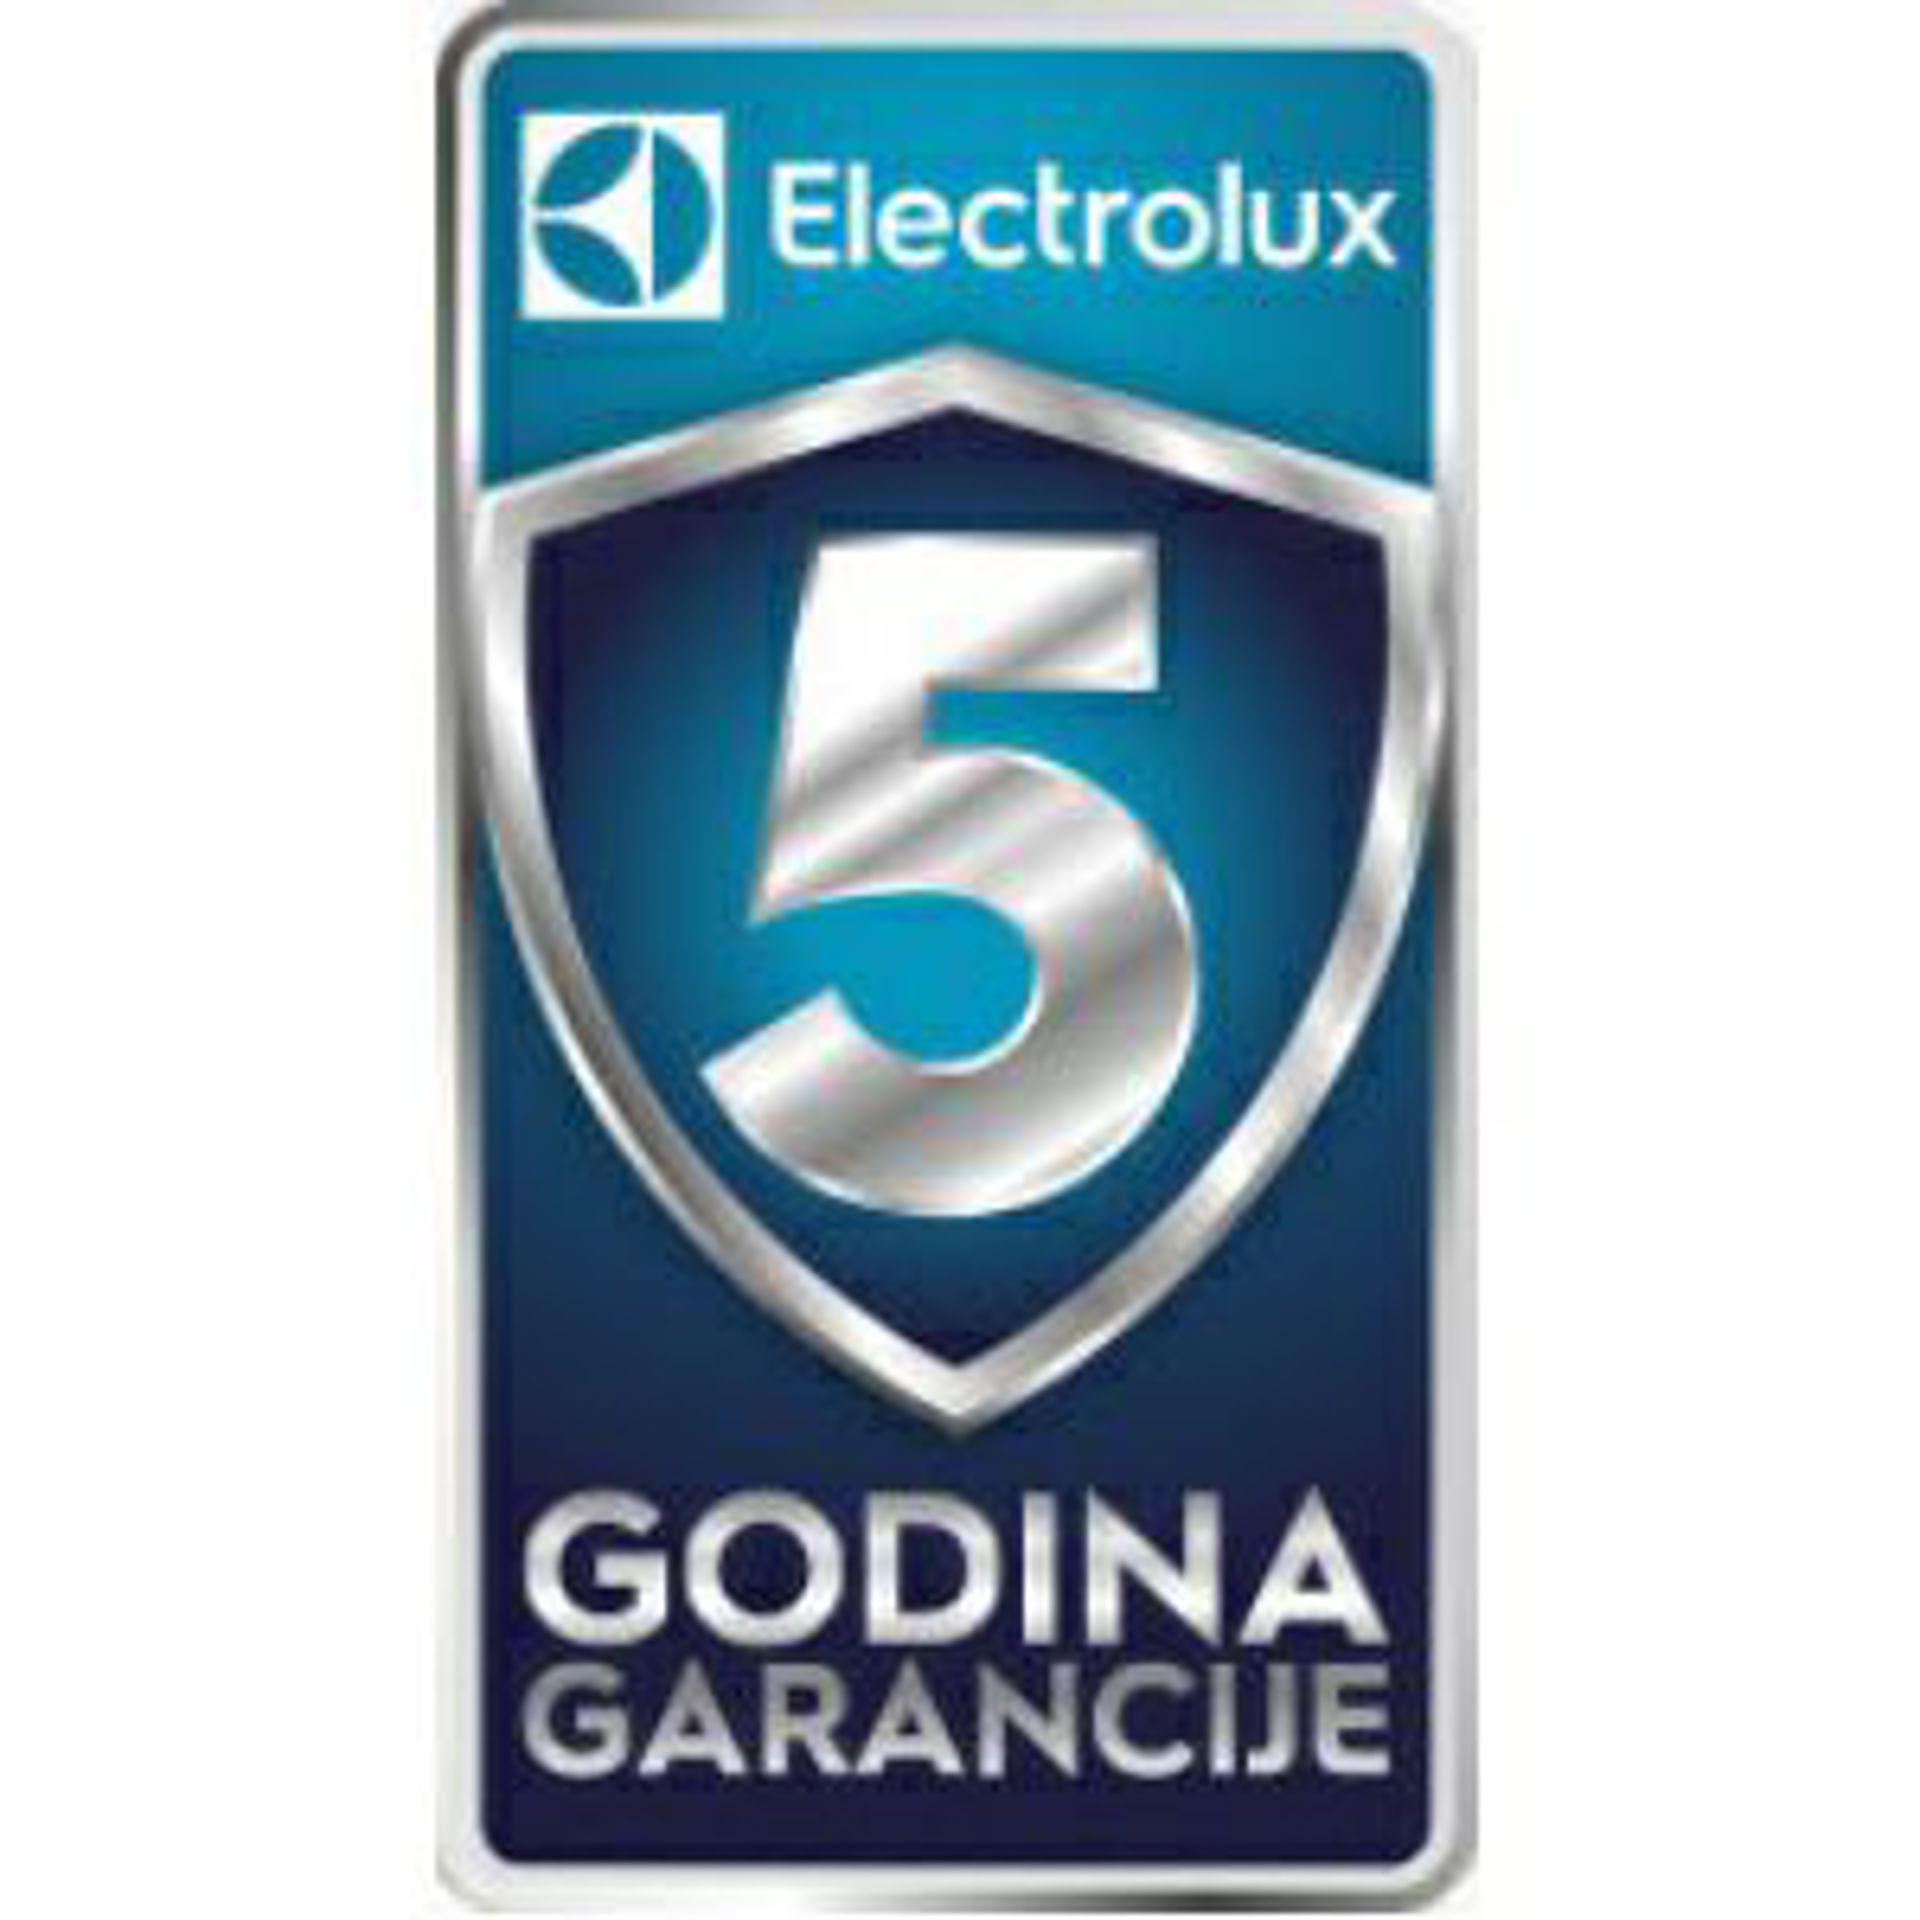 Electrolux bijela tehnika - 5 godina garancije